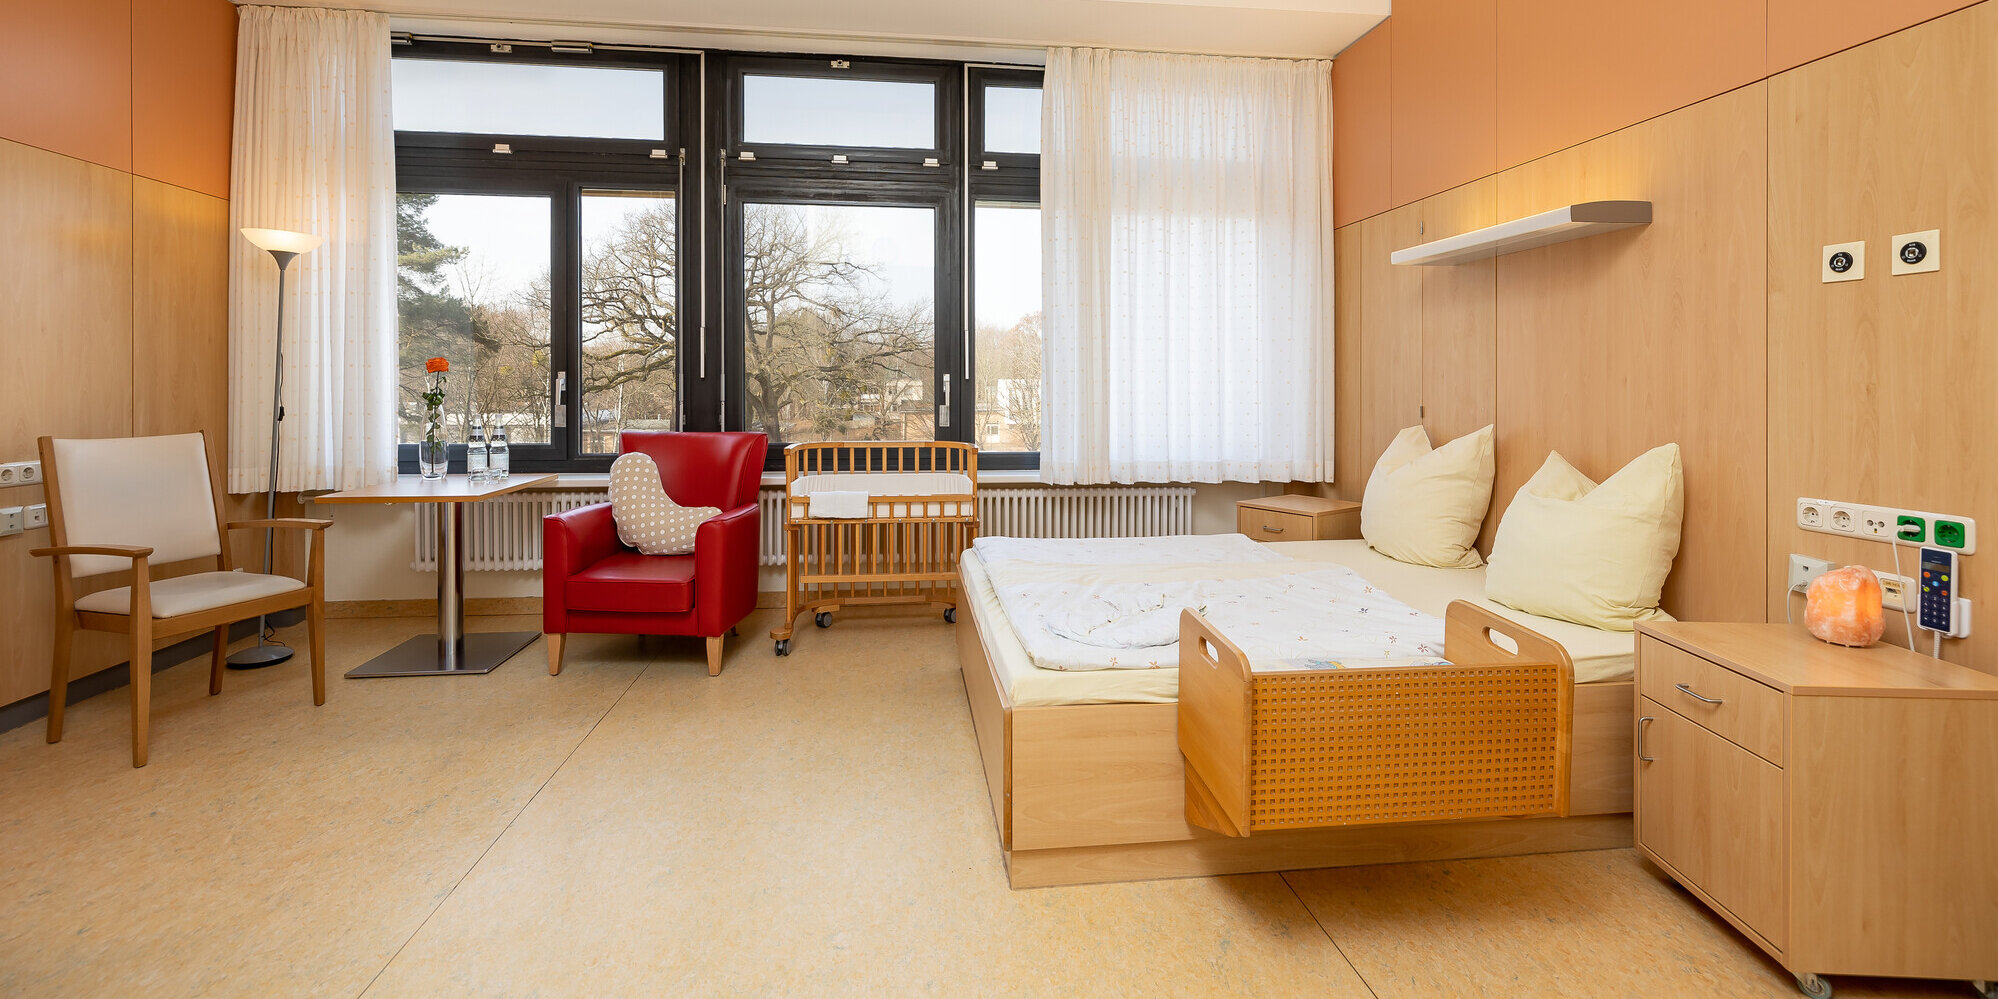 Großer heller Raum mit großen Fenstern, breitem Bett, Sitzmöglichkeiten und Babybett.